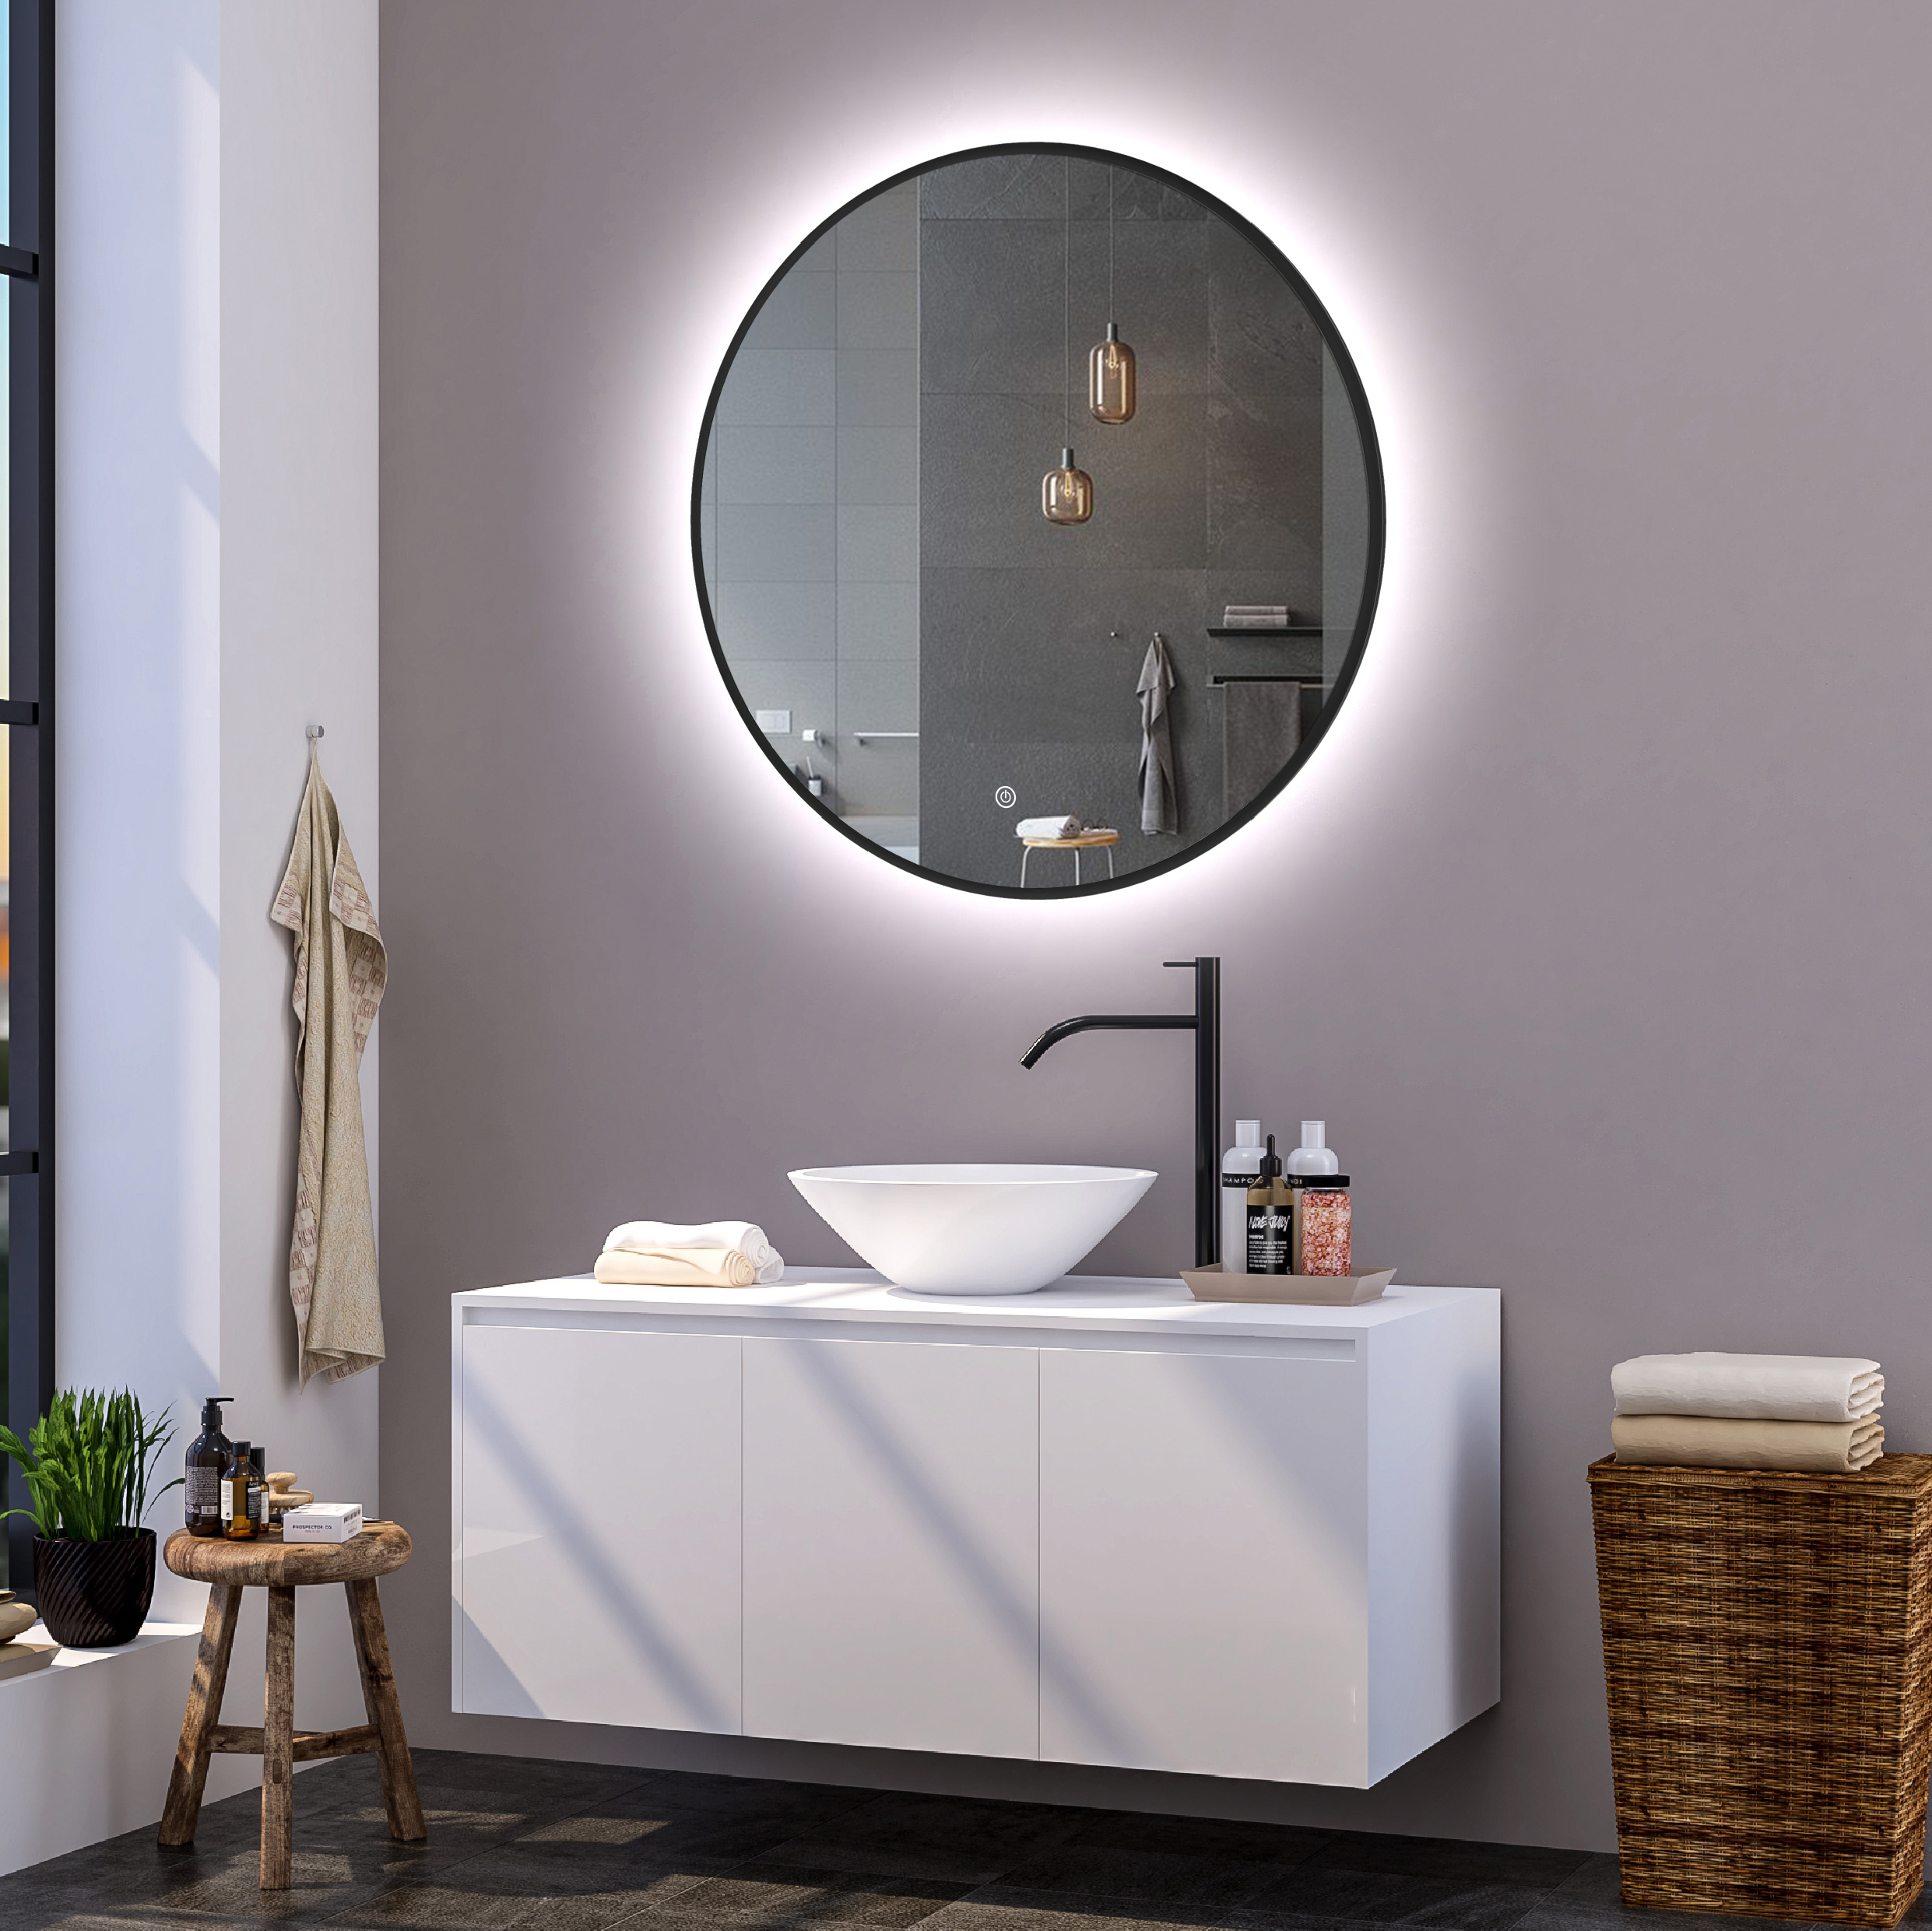 Ronde badkamerspiegel mat zwart met verwarming, LED verlichting en touch sensor 100x100cm - Voordelig Design Sanitair